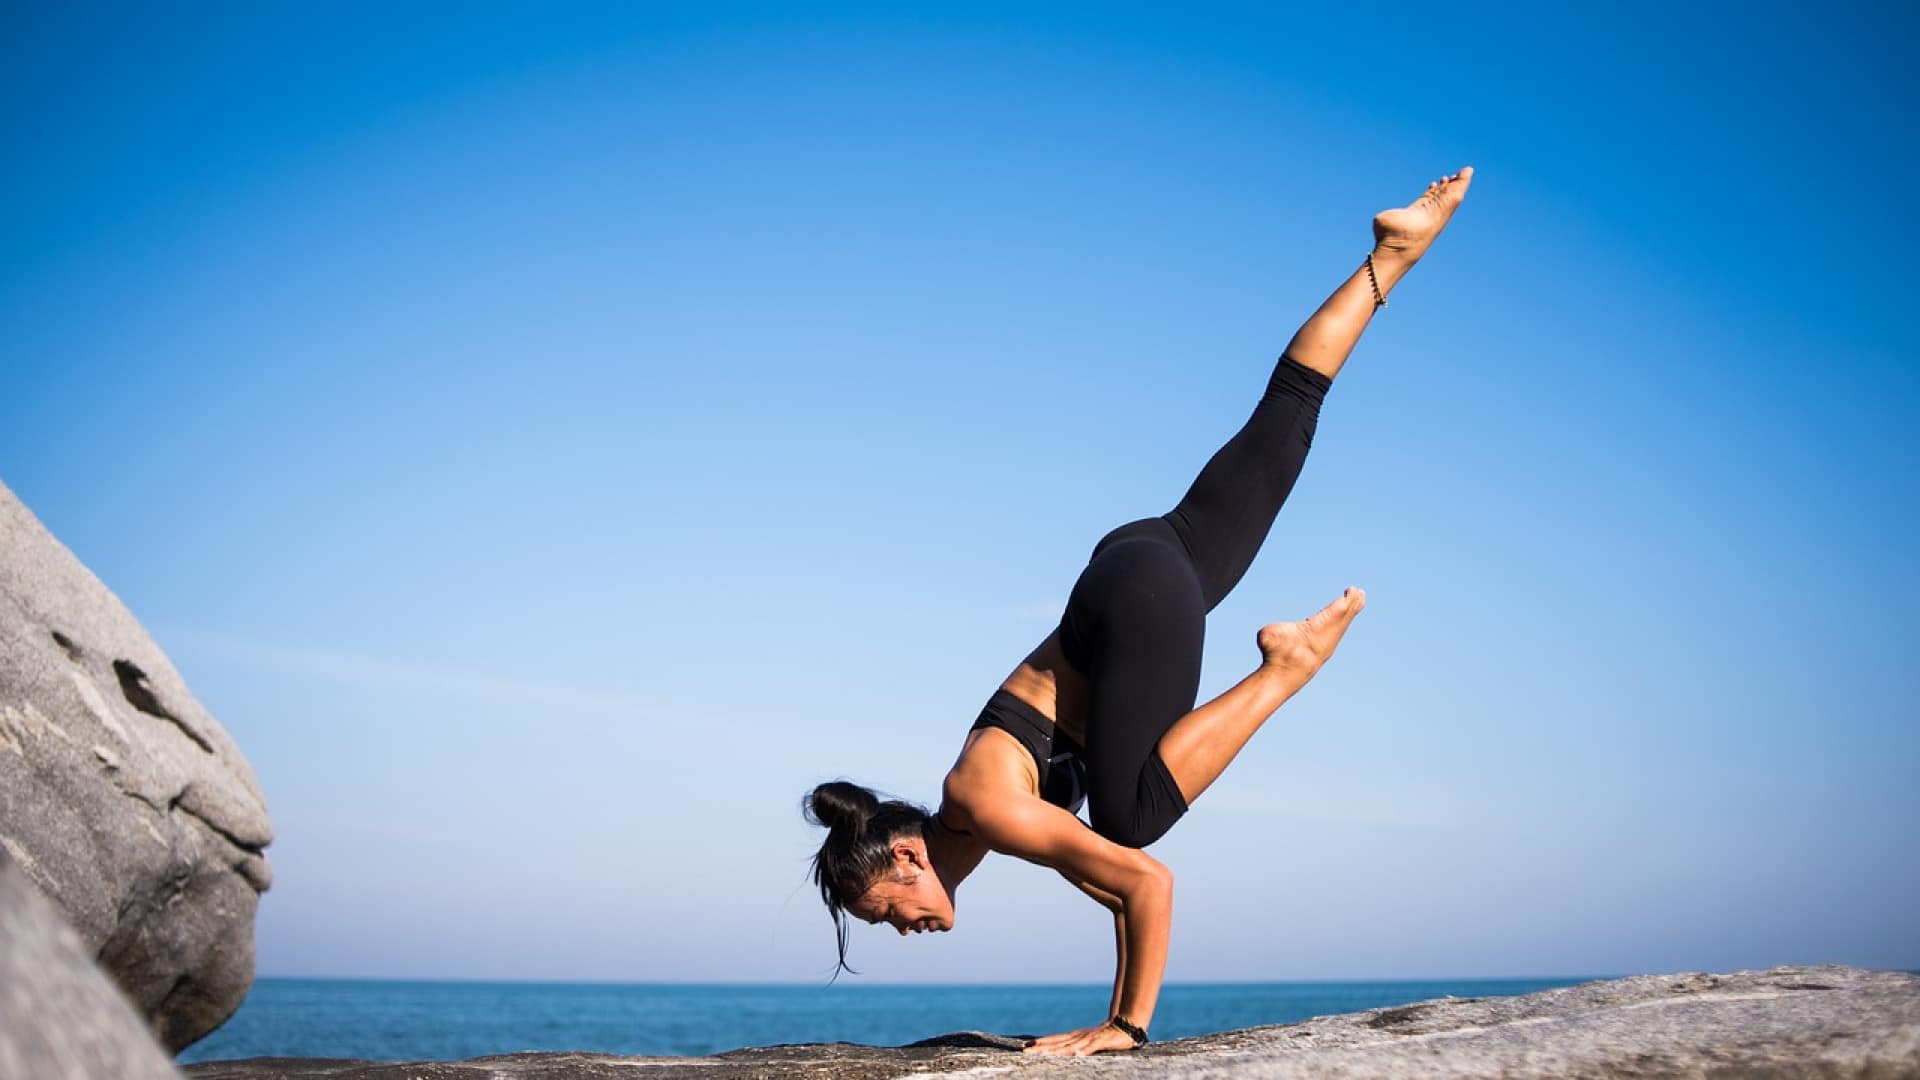 Femme pratiquant le yoga sur une côte rocheuse avec un ciel clair et la santé en arrière-plan.